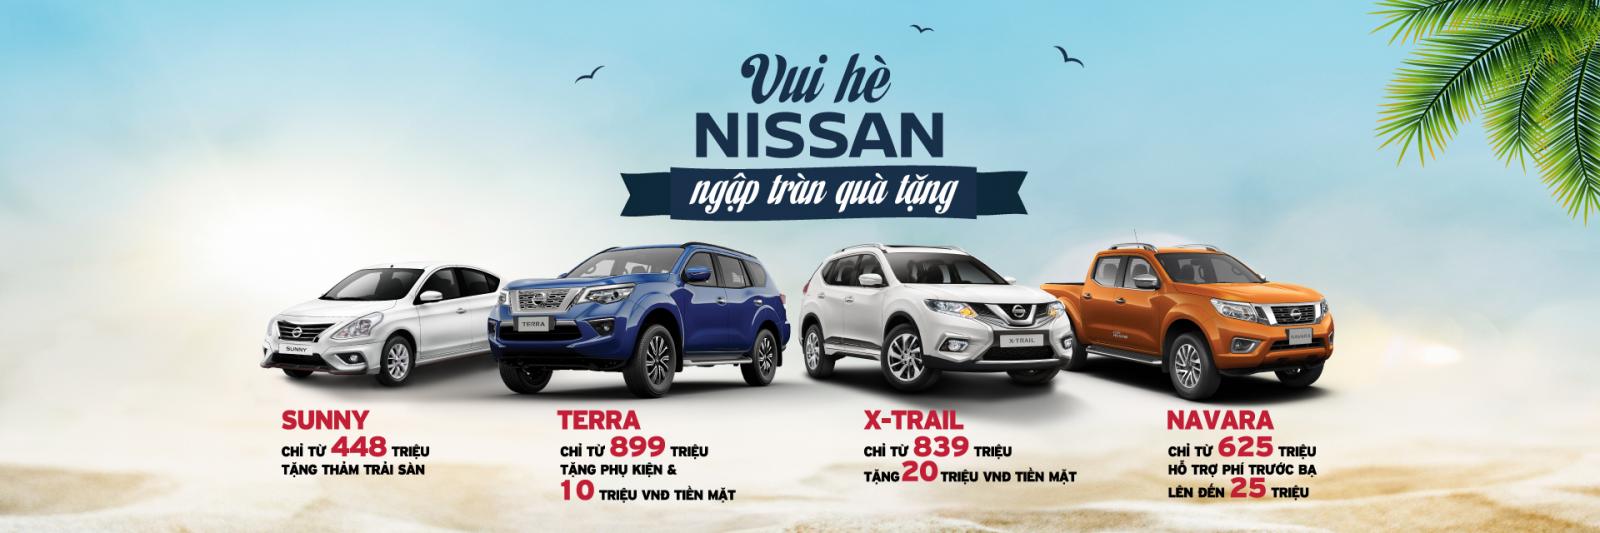 Nissan Việt Nam khuyến mại cho tất cả các sản phẩm trong tháng 7/2019 1a